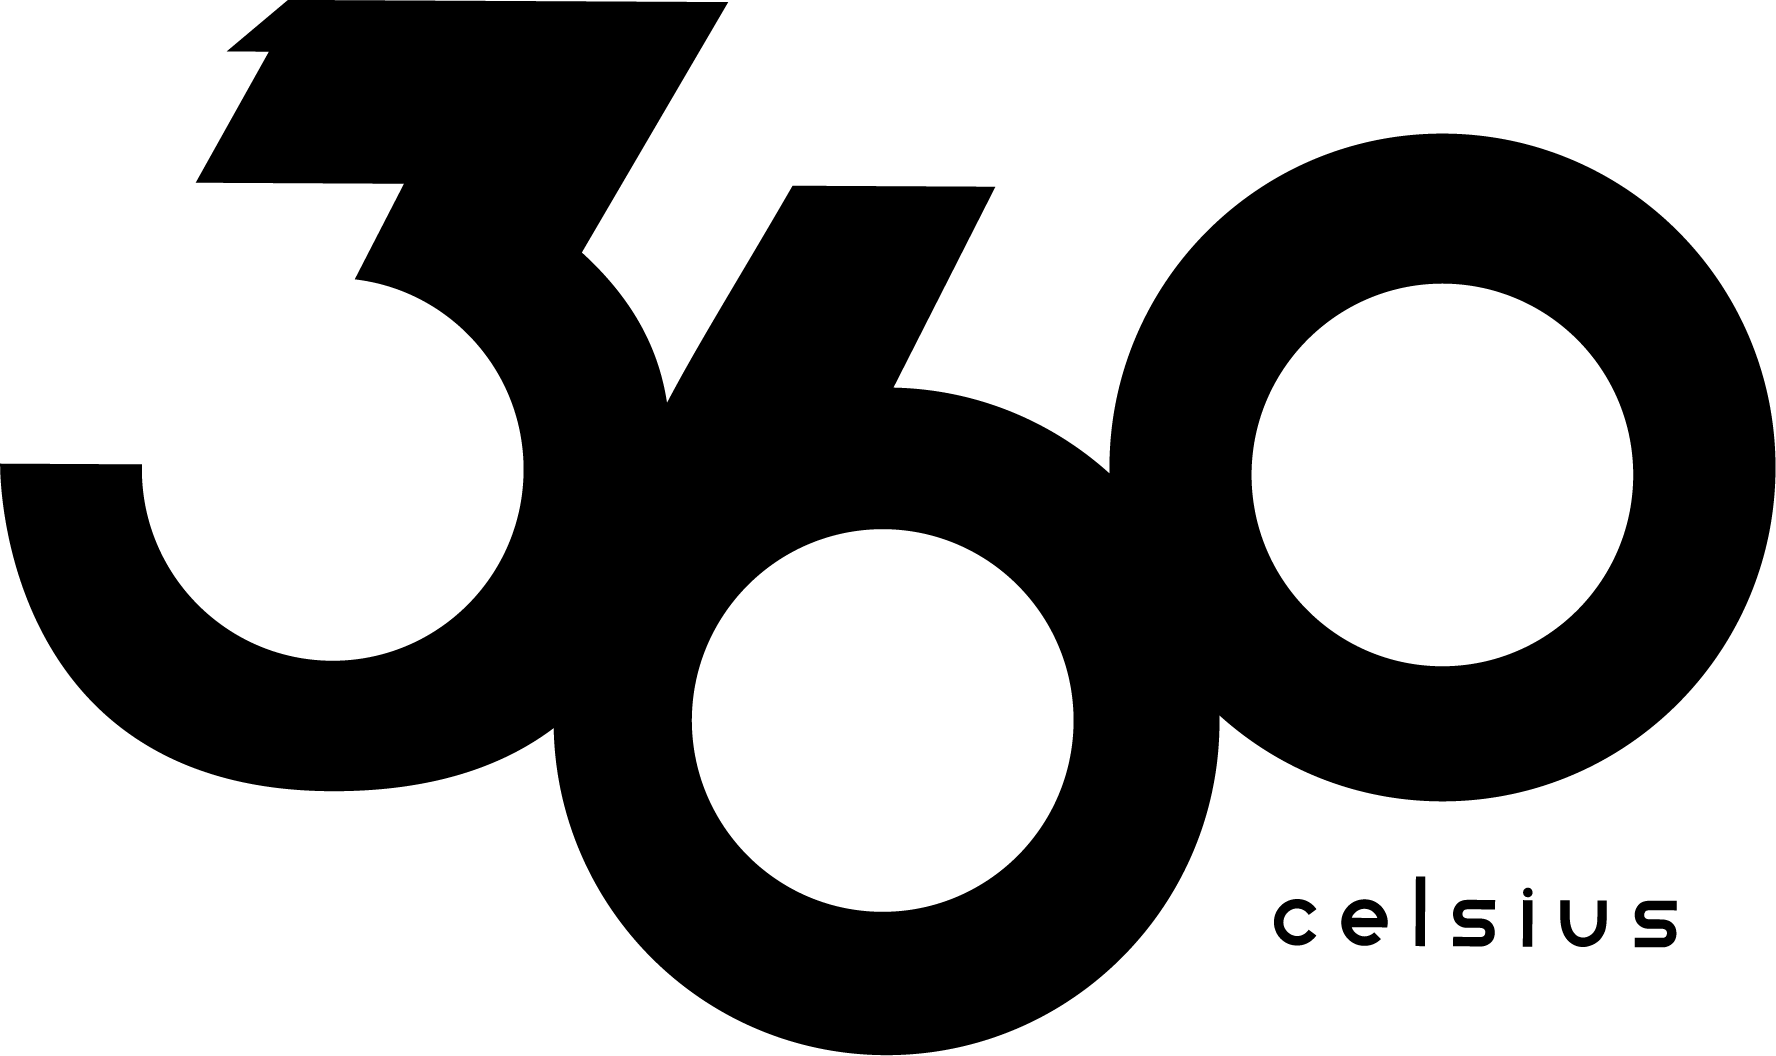 360 Celsius Logo.png